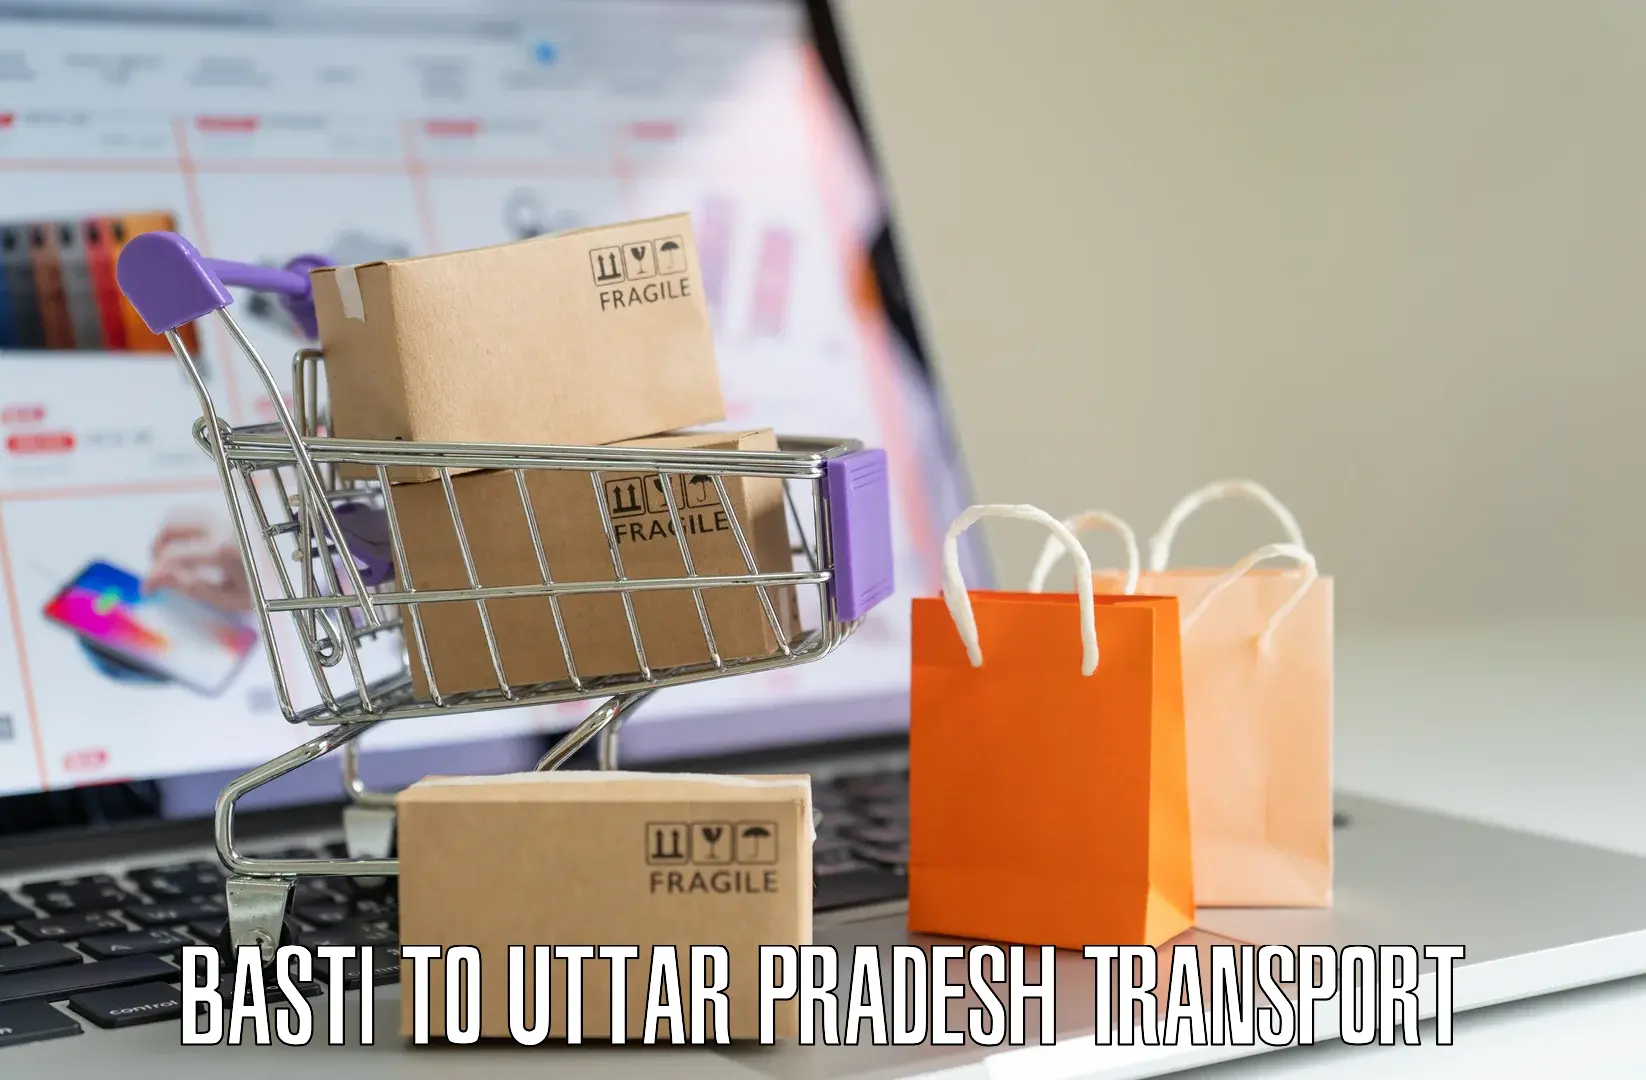 Bike transfer in Basti to Uttar Pradesh